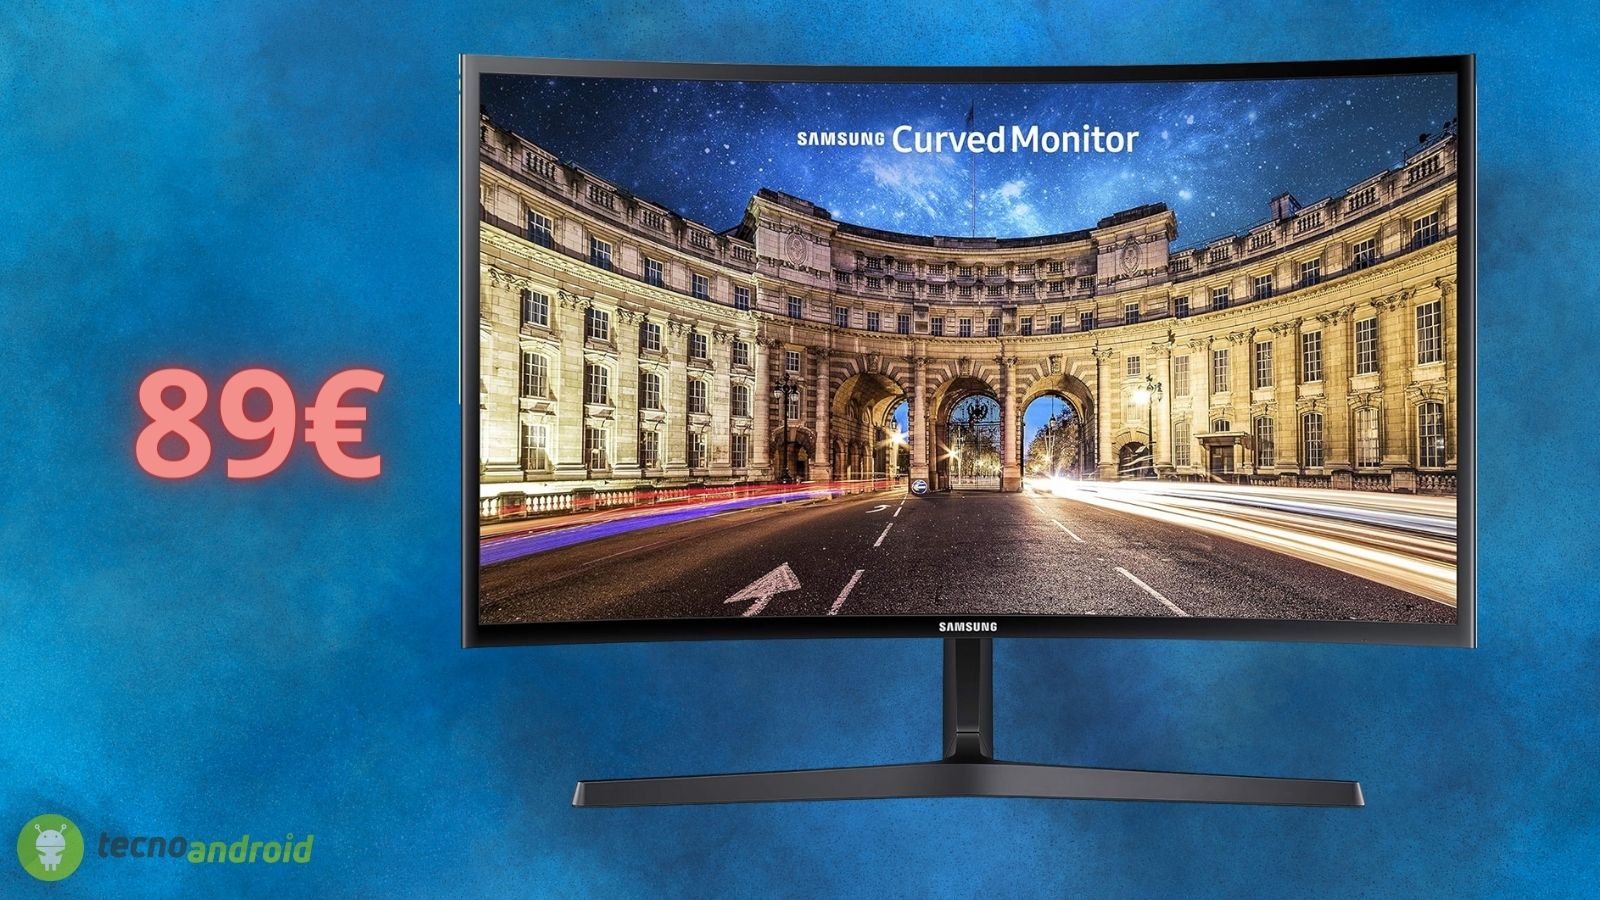 Monitor CURVO Samsung a 89€: un prezzo ASSURDO su Amazon